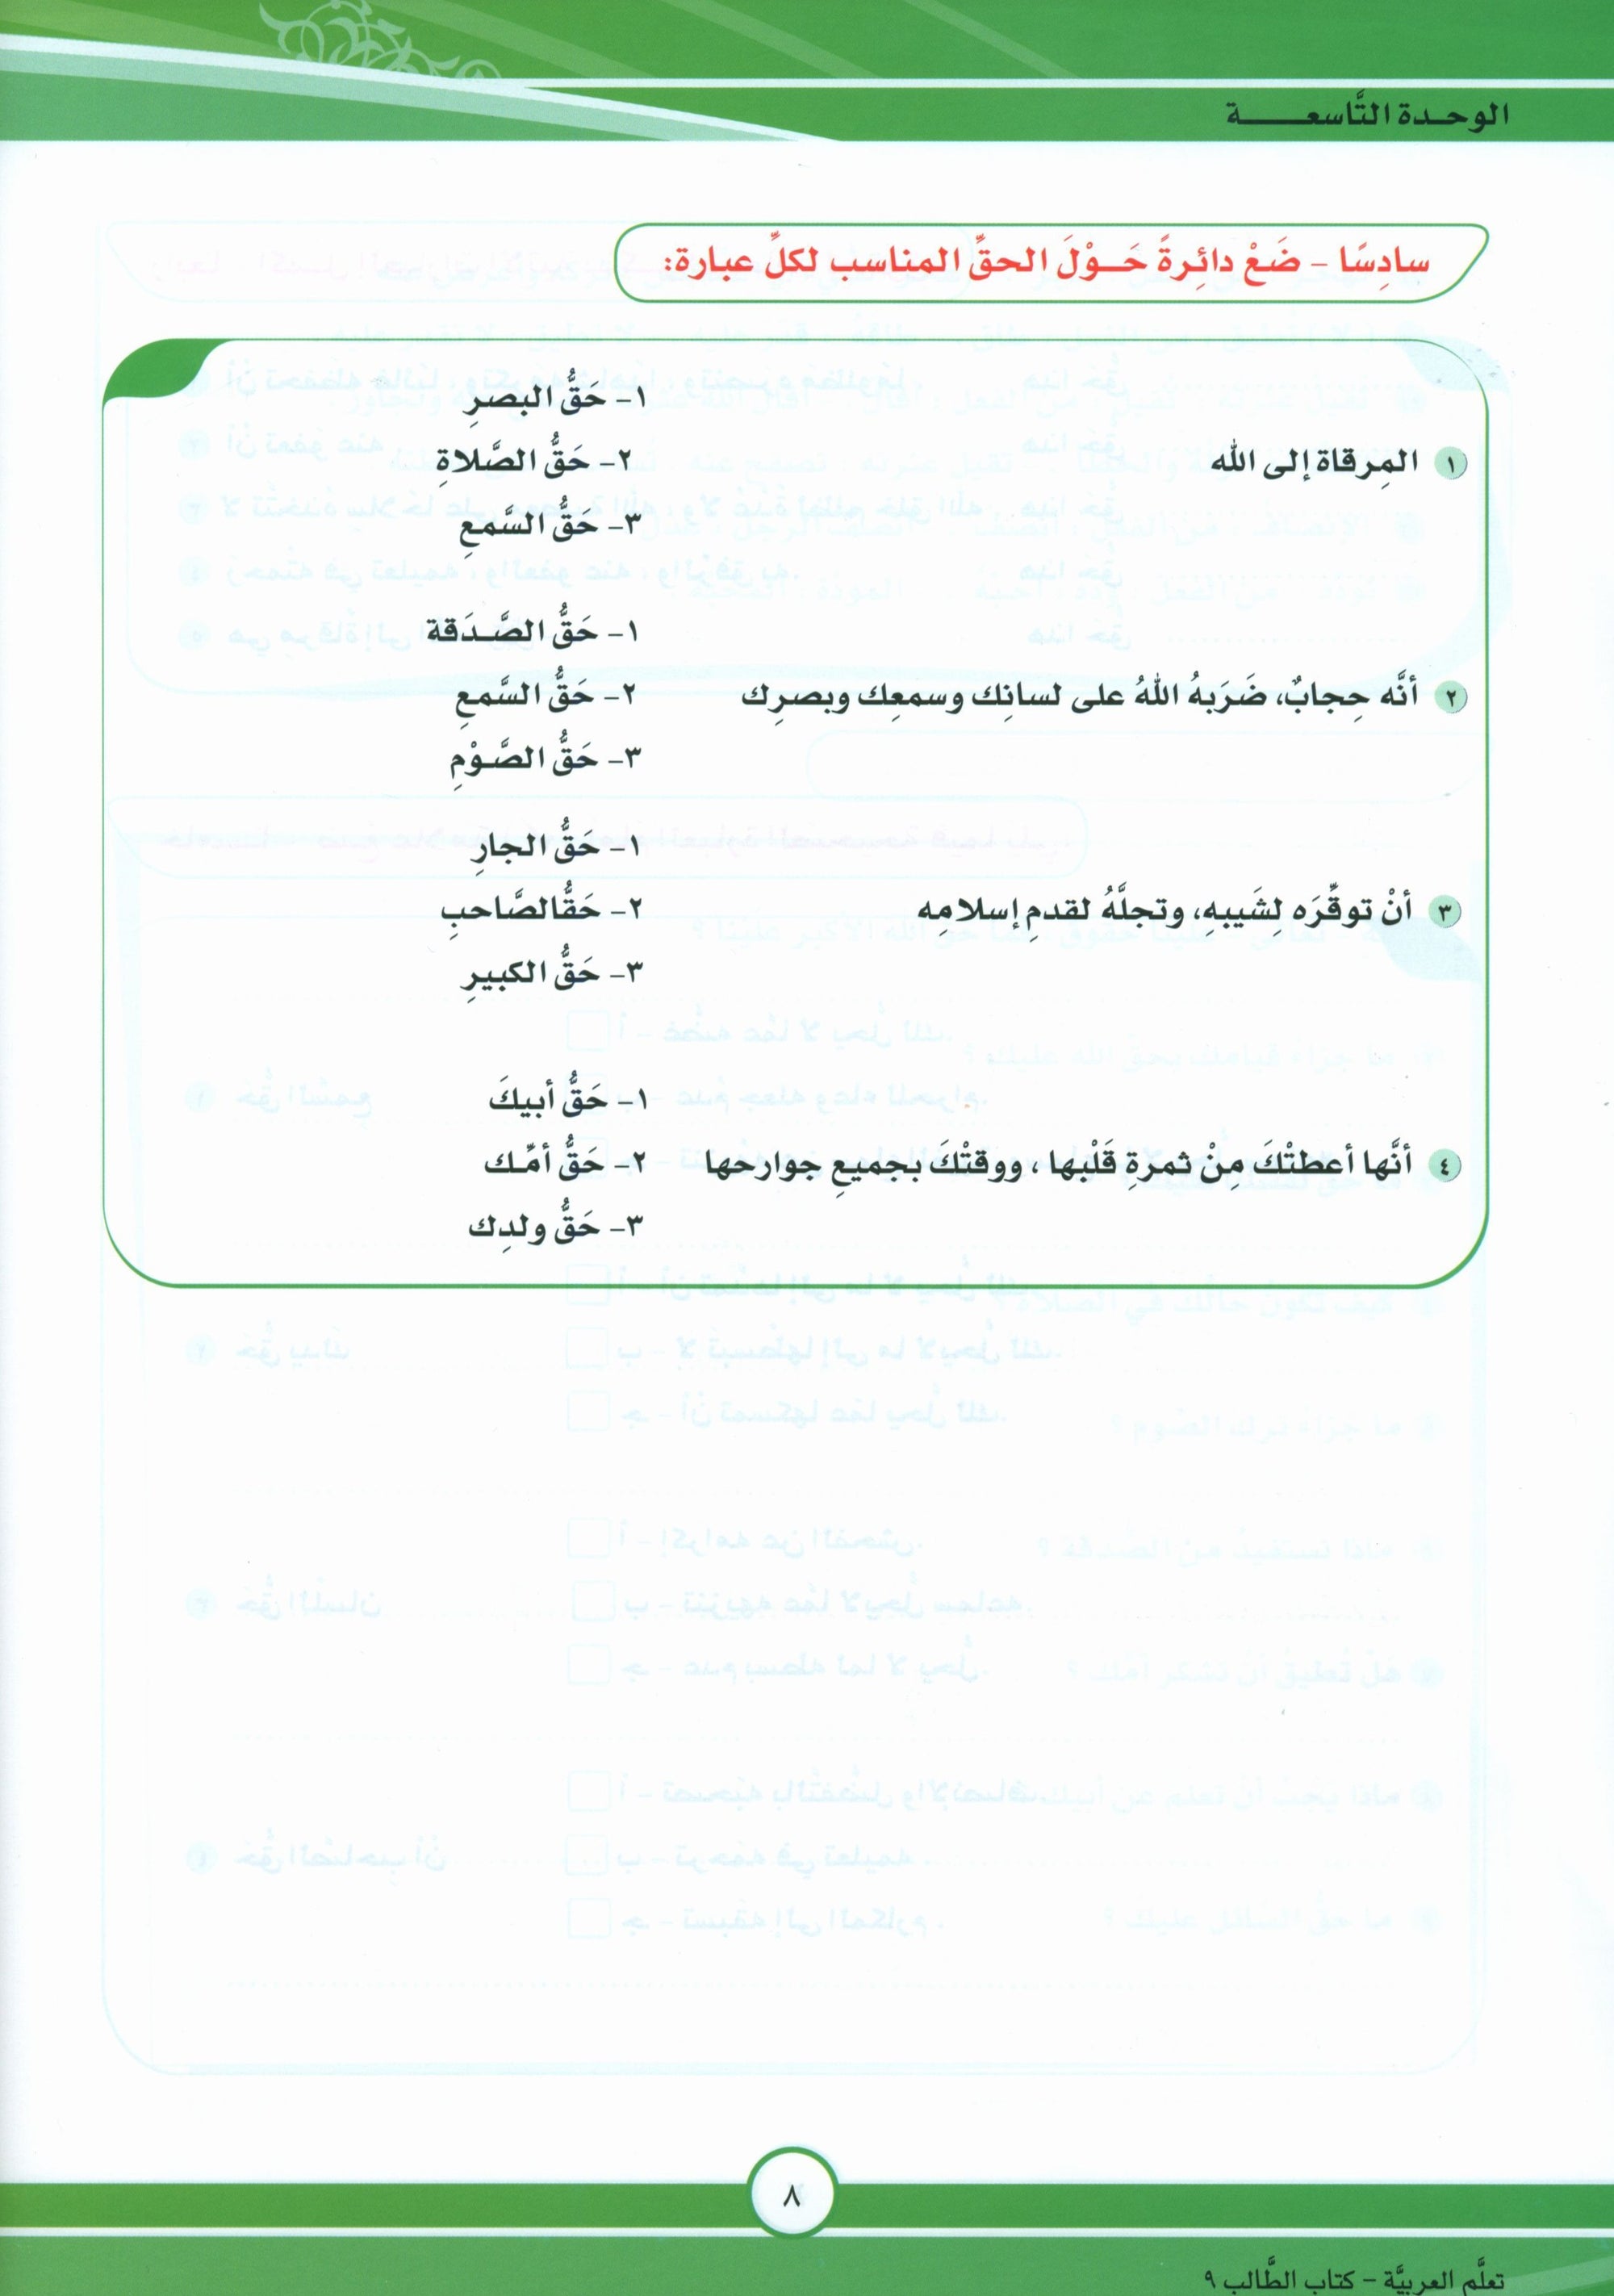 ICO Learn Arabic Textbook Level 9 Part 2 تعلم العربية كتاب التلميذ